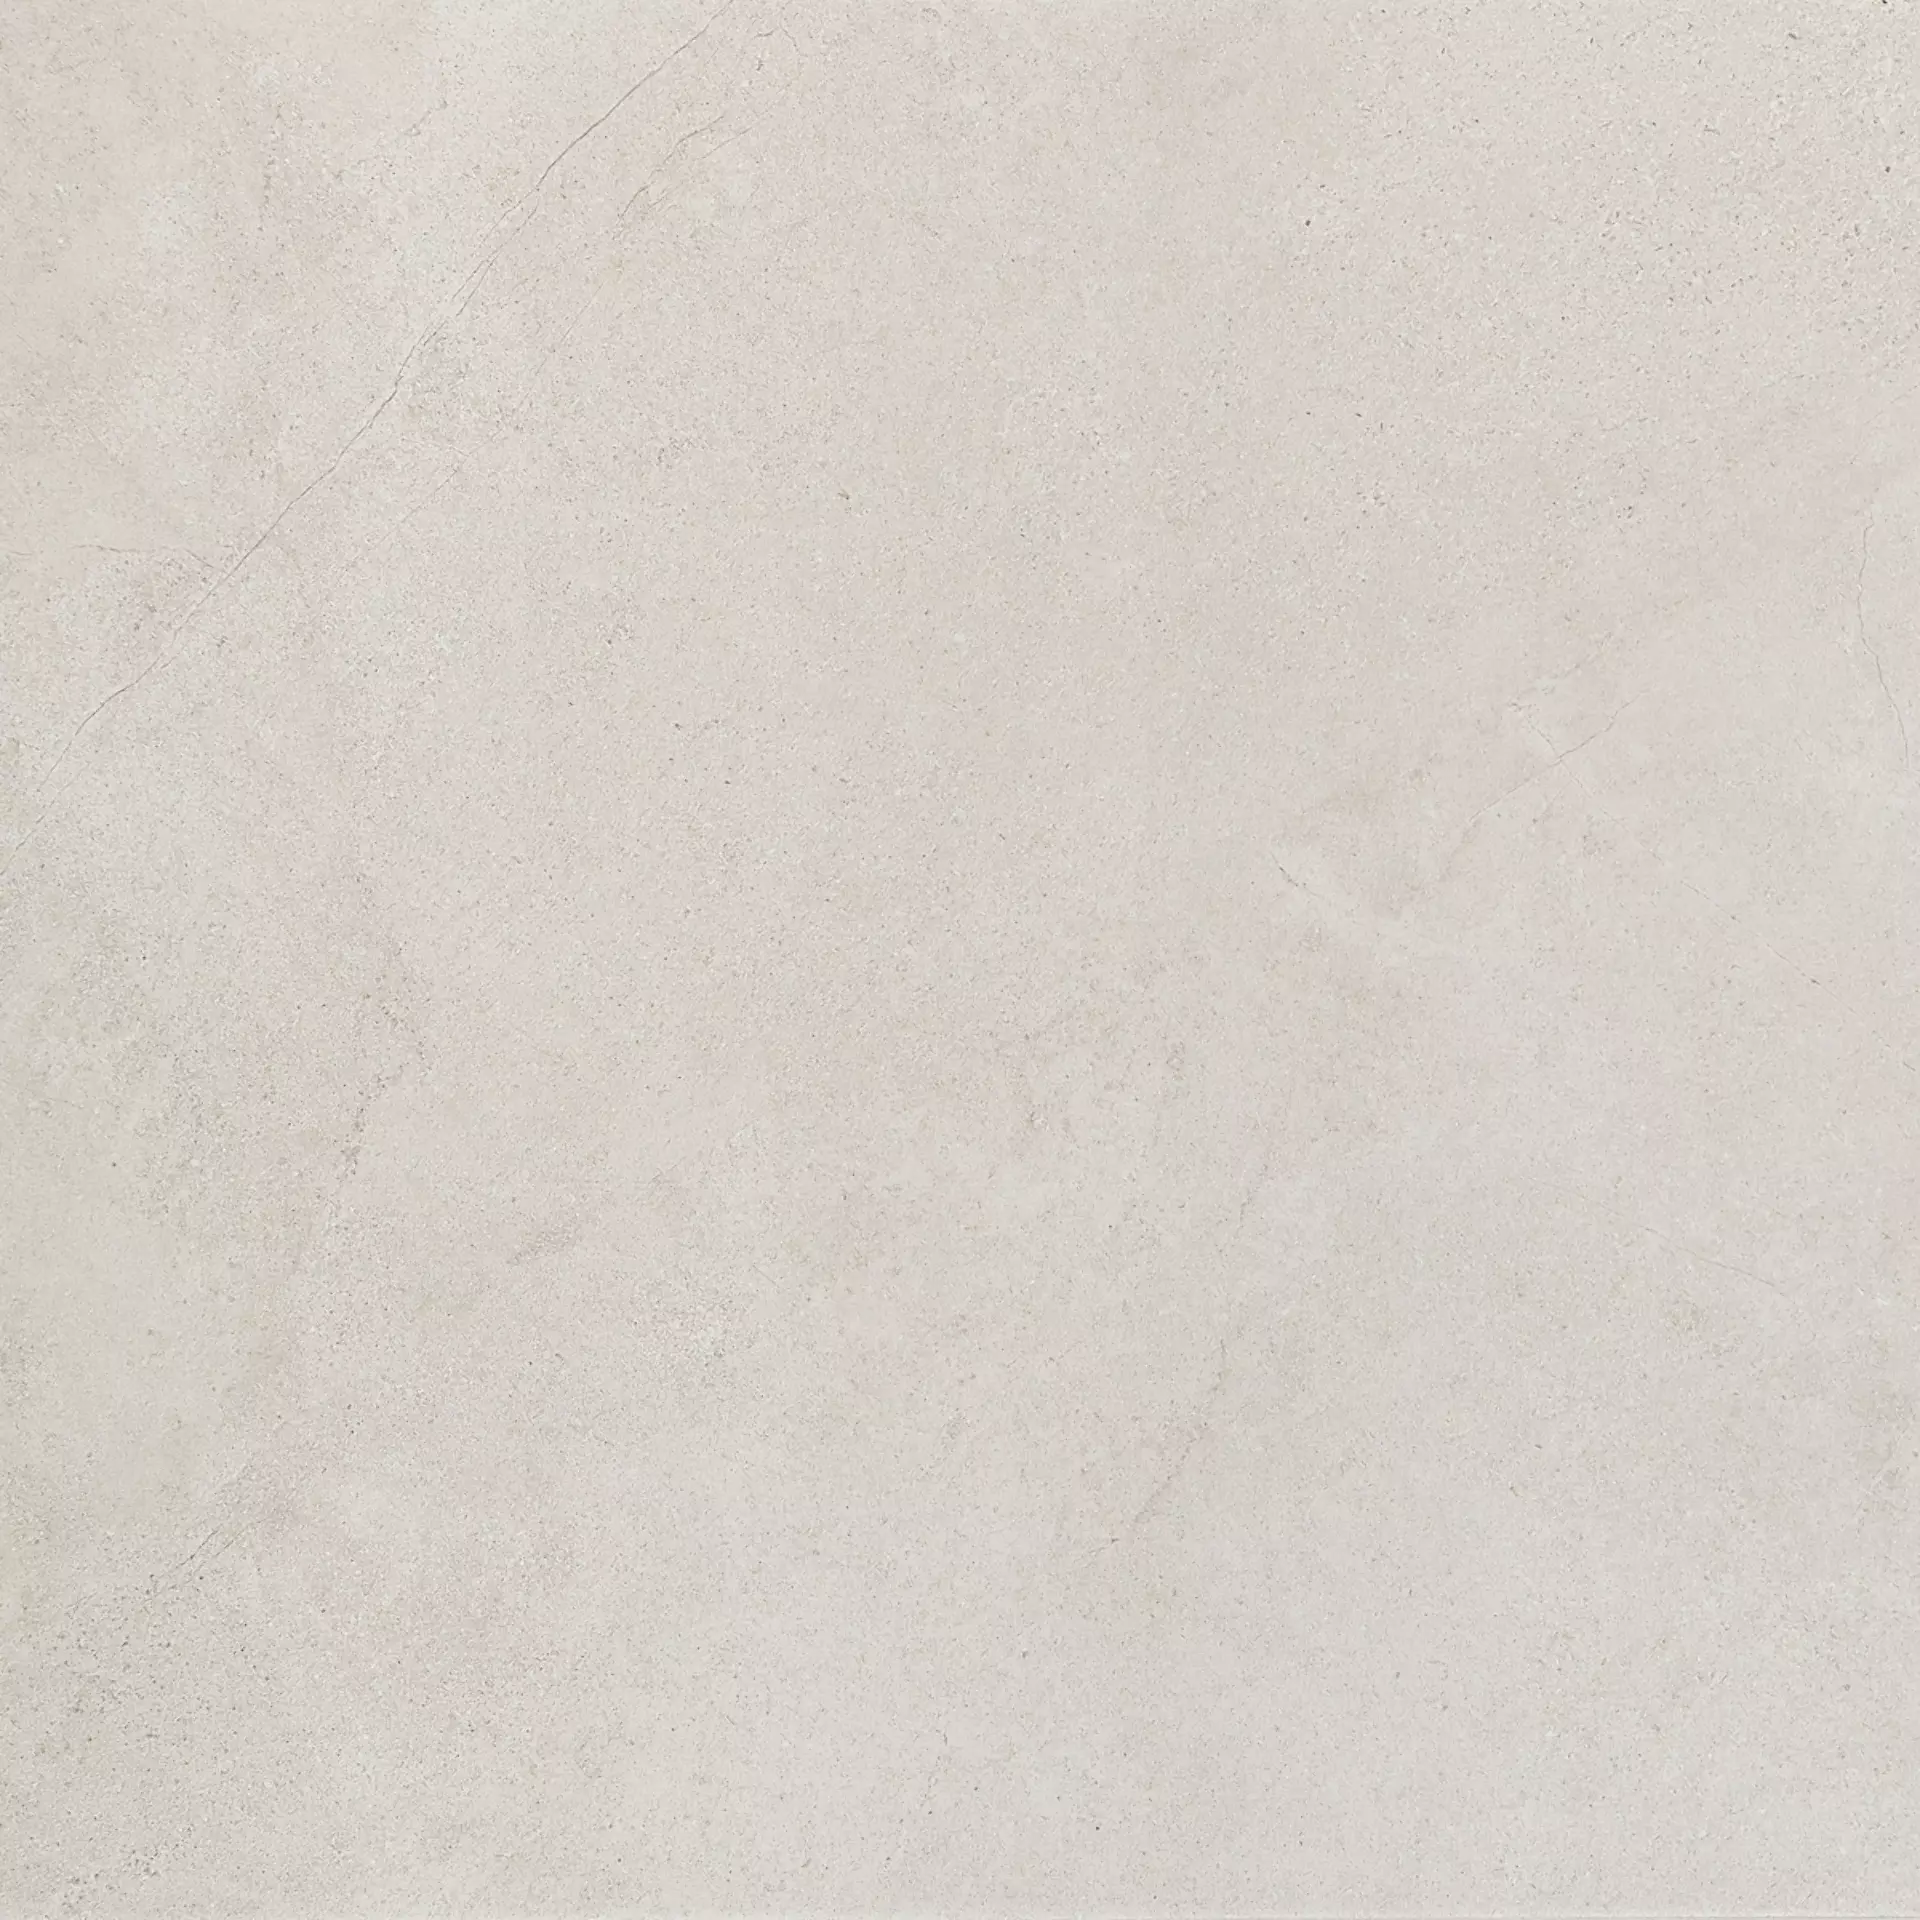 Marazzi Mystone Kashmir Bianco Naturale – Matt MLP9 60x60cm rectified 10mm